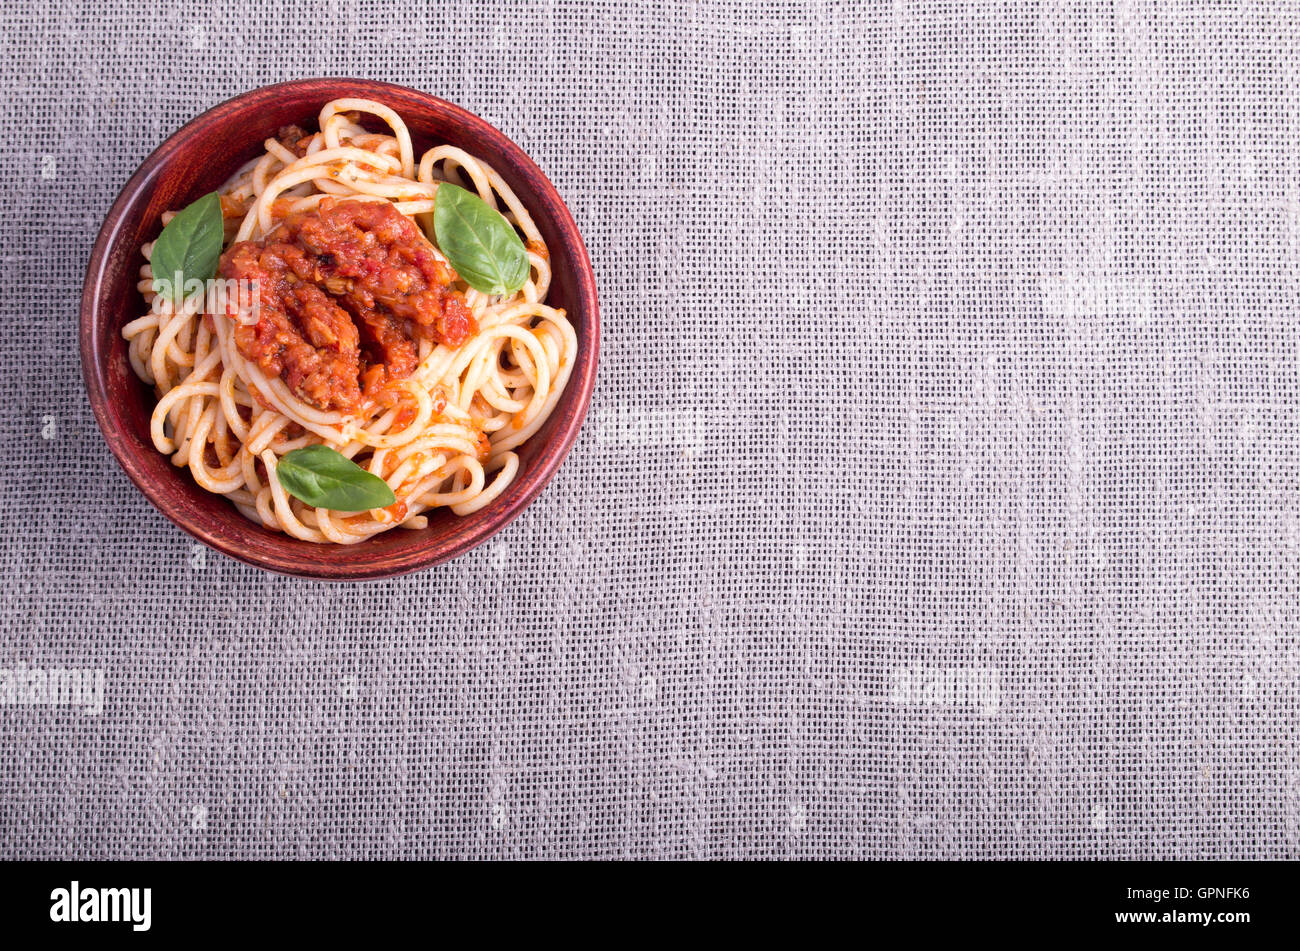 Vue de dessus d'un tapis gris avec une petite portion de spaghetti cuit dans un petit bol en bois de brun Banque D'Images